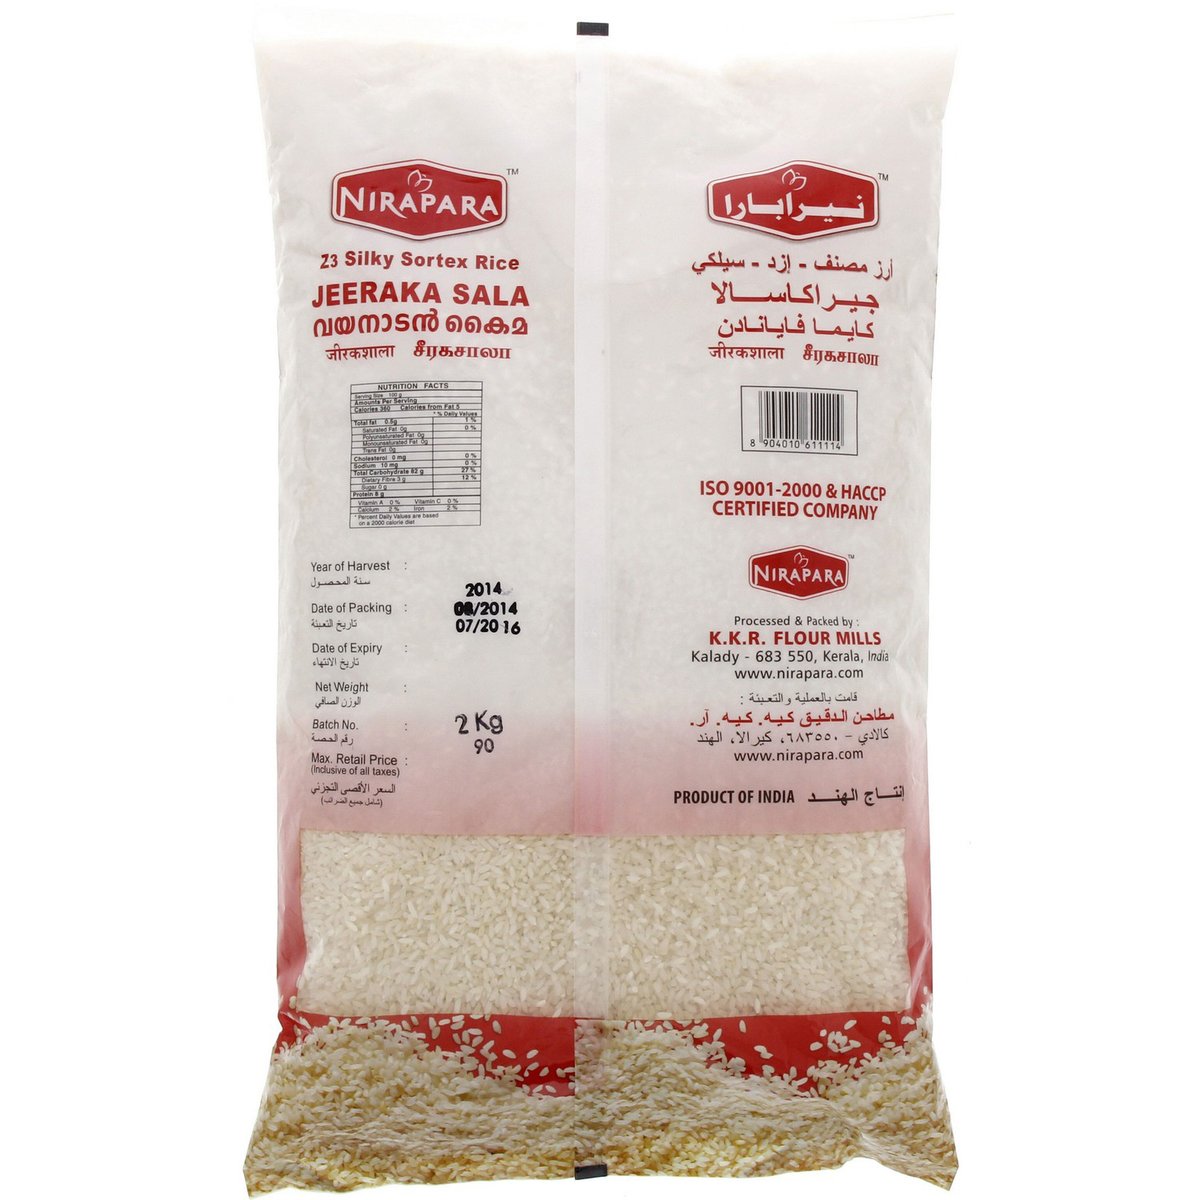 نيرابارا أرز جيراكاشالا 2 كجم